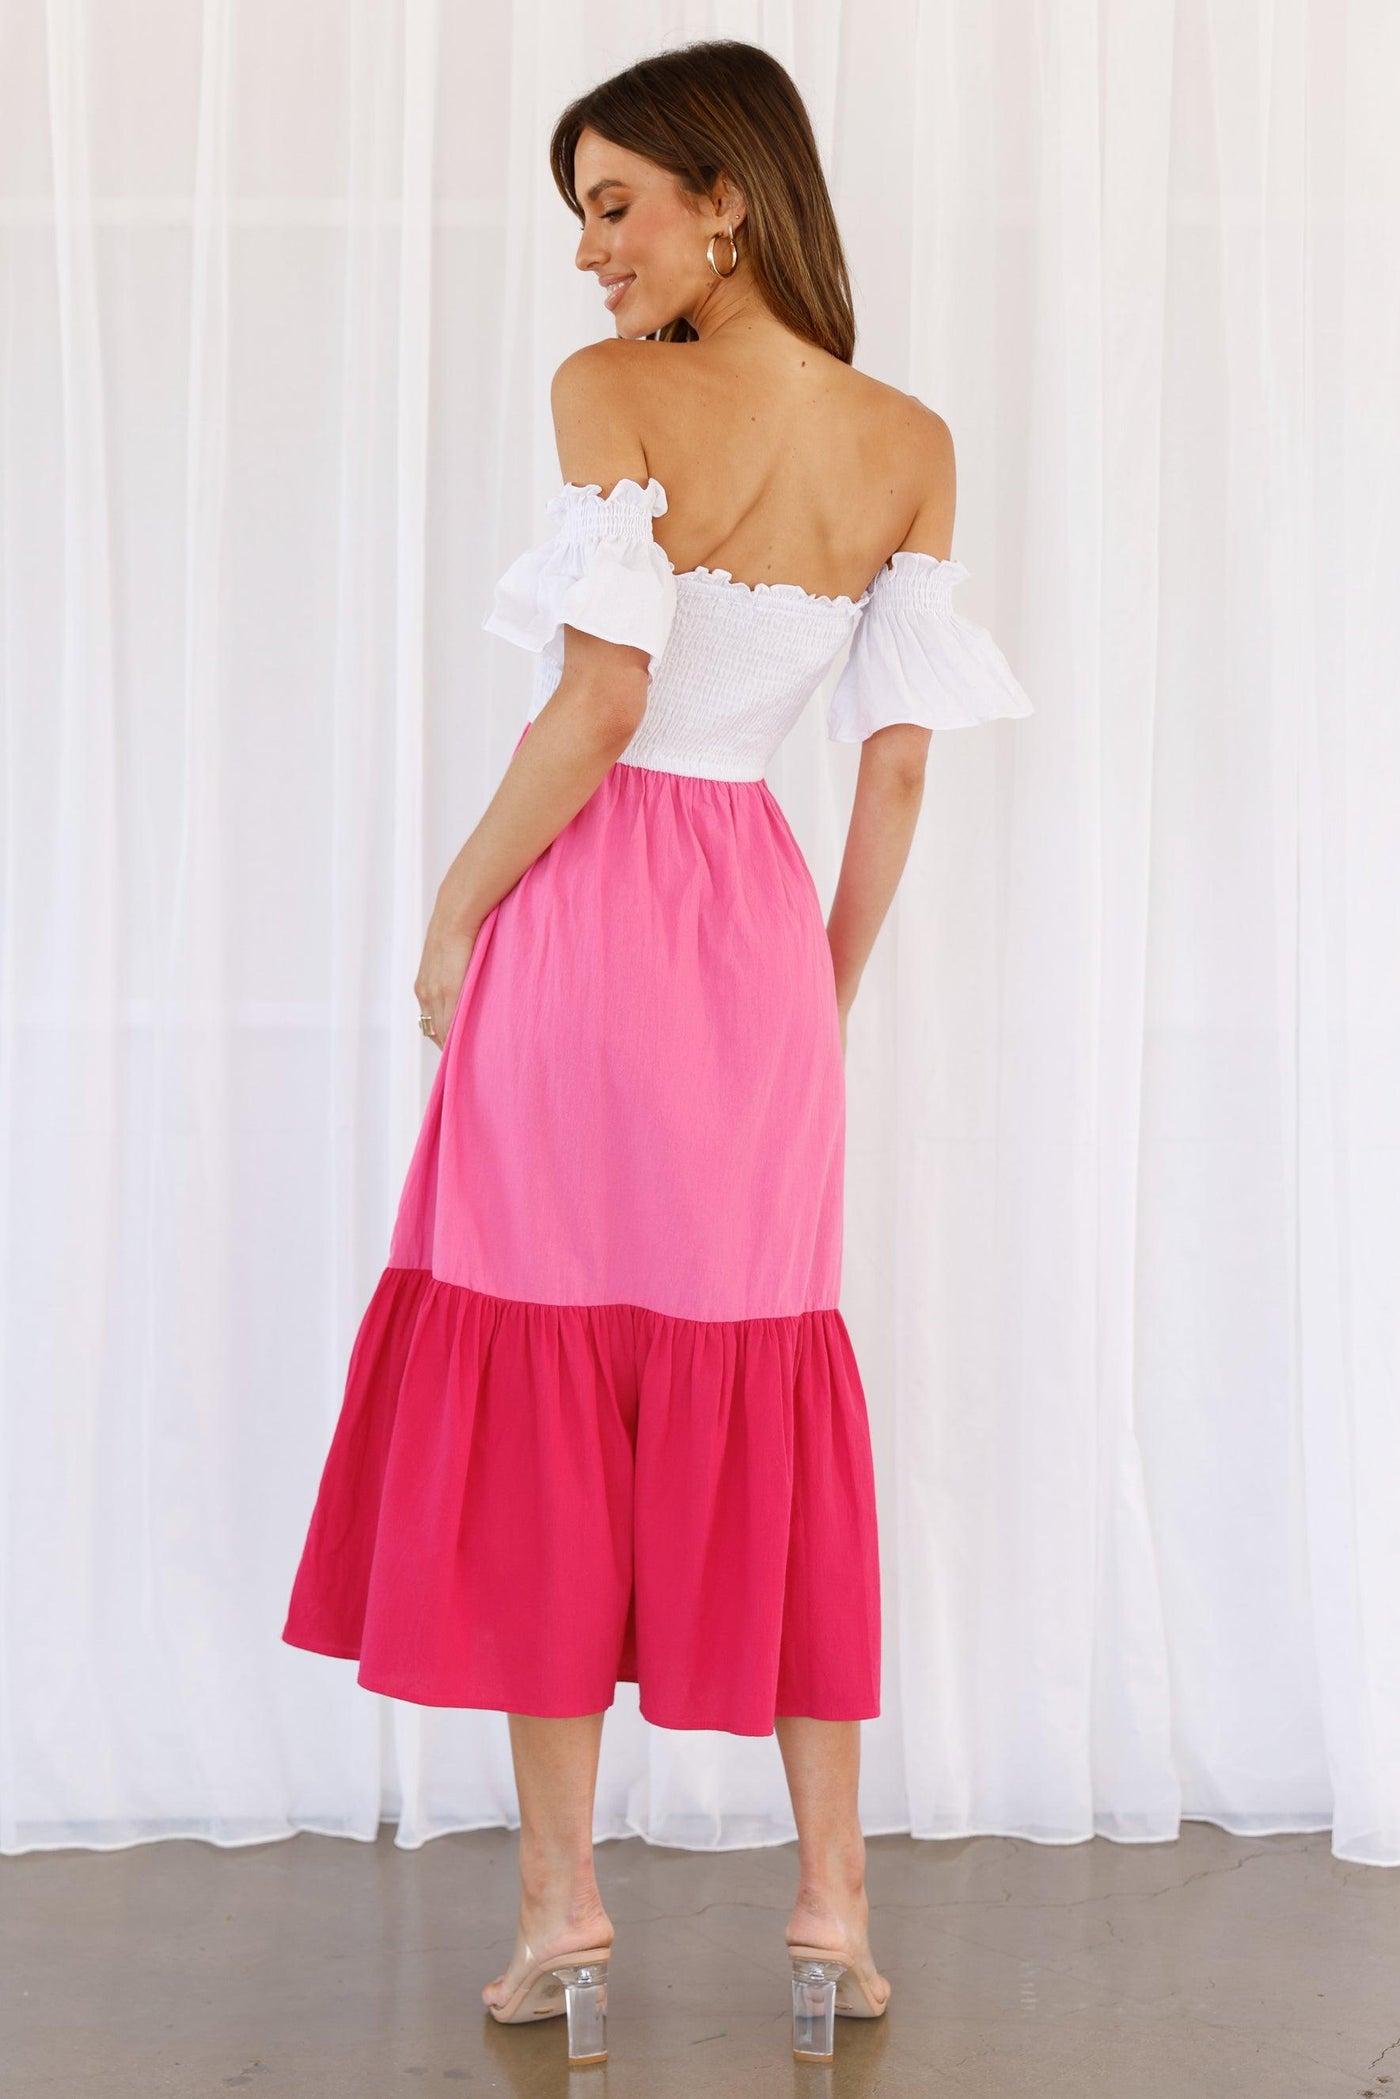 Jeret Dress - Pink - JAUS